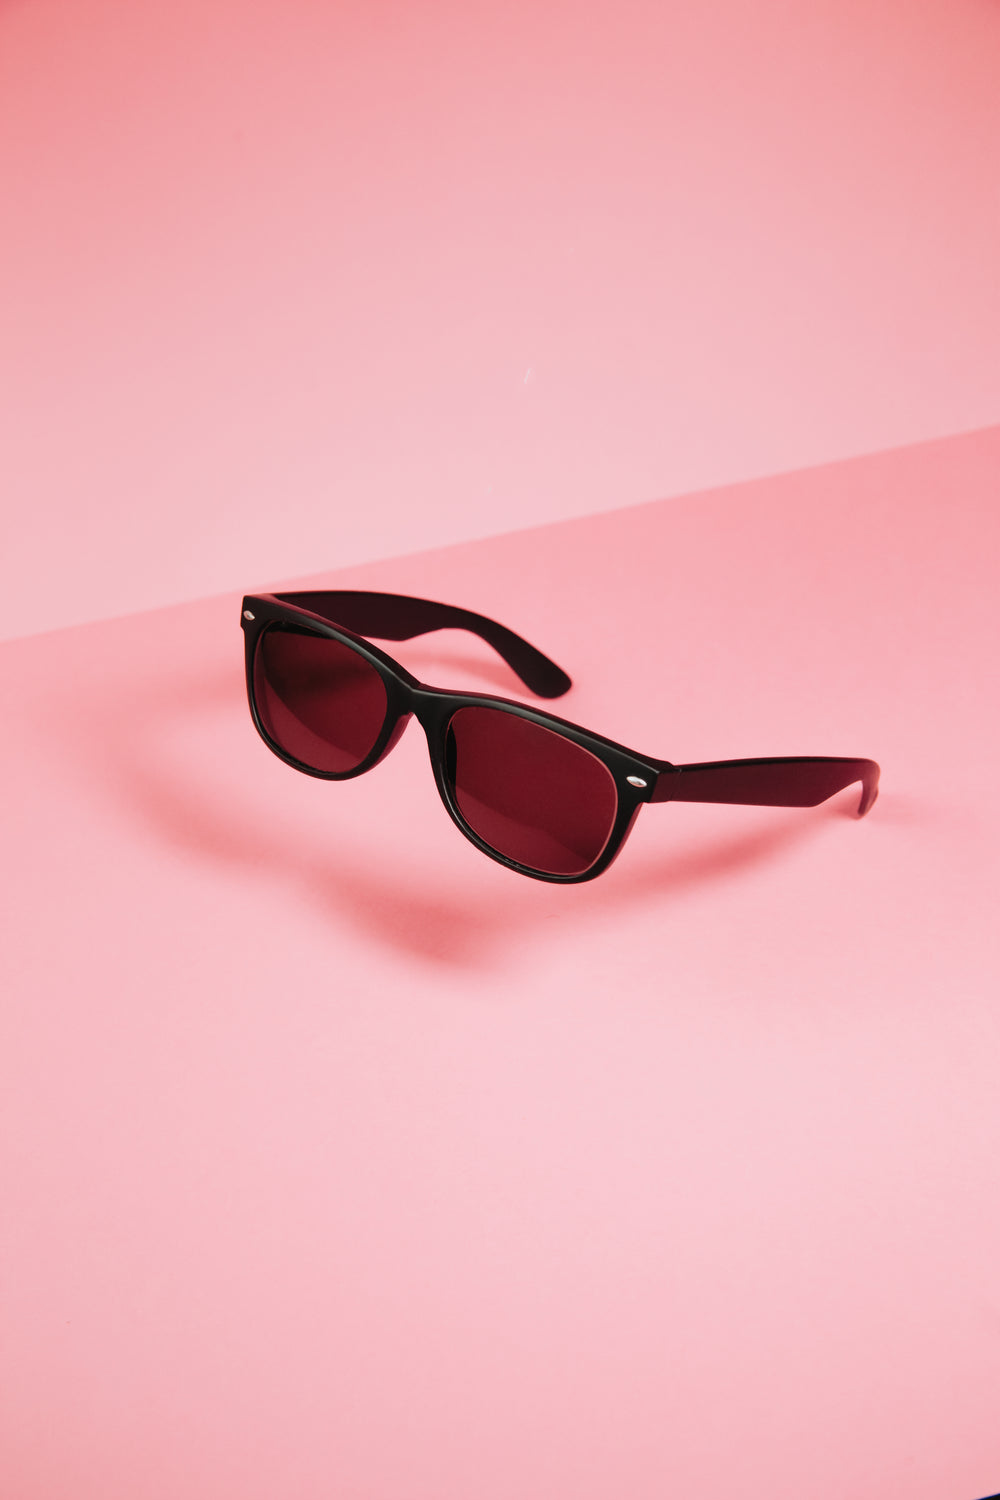 black sunglasses on pink